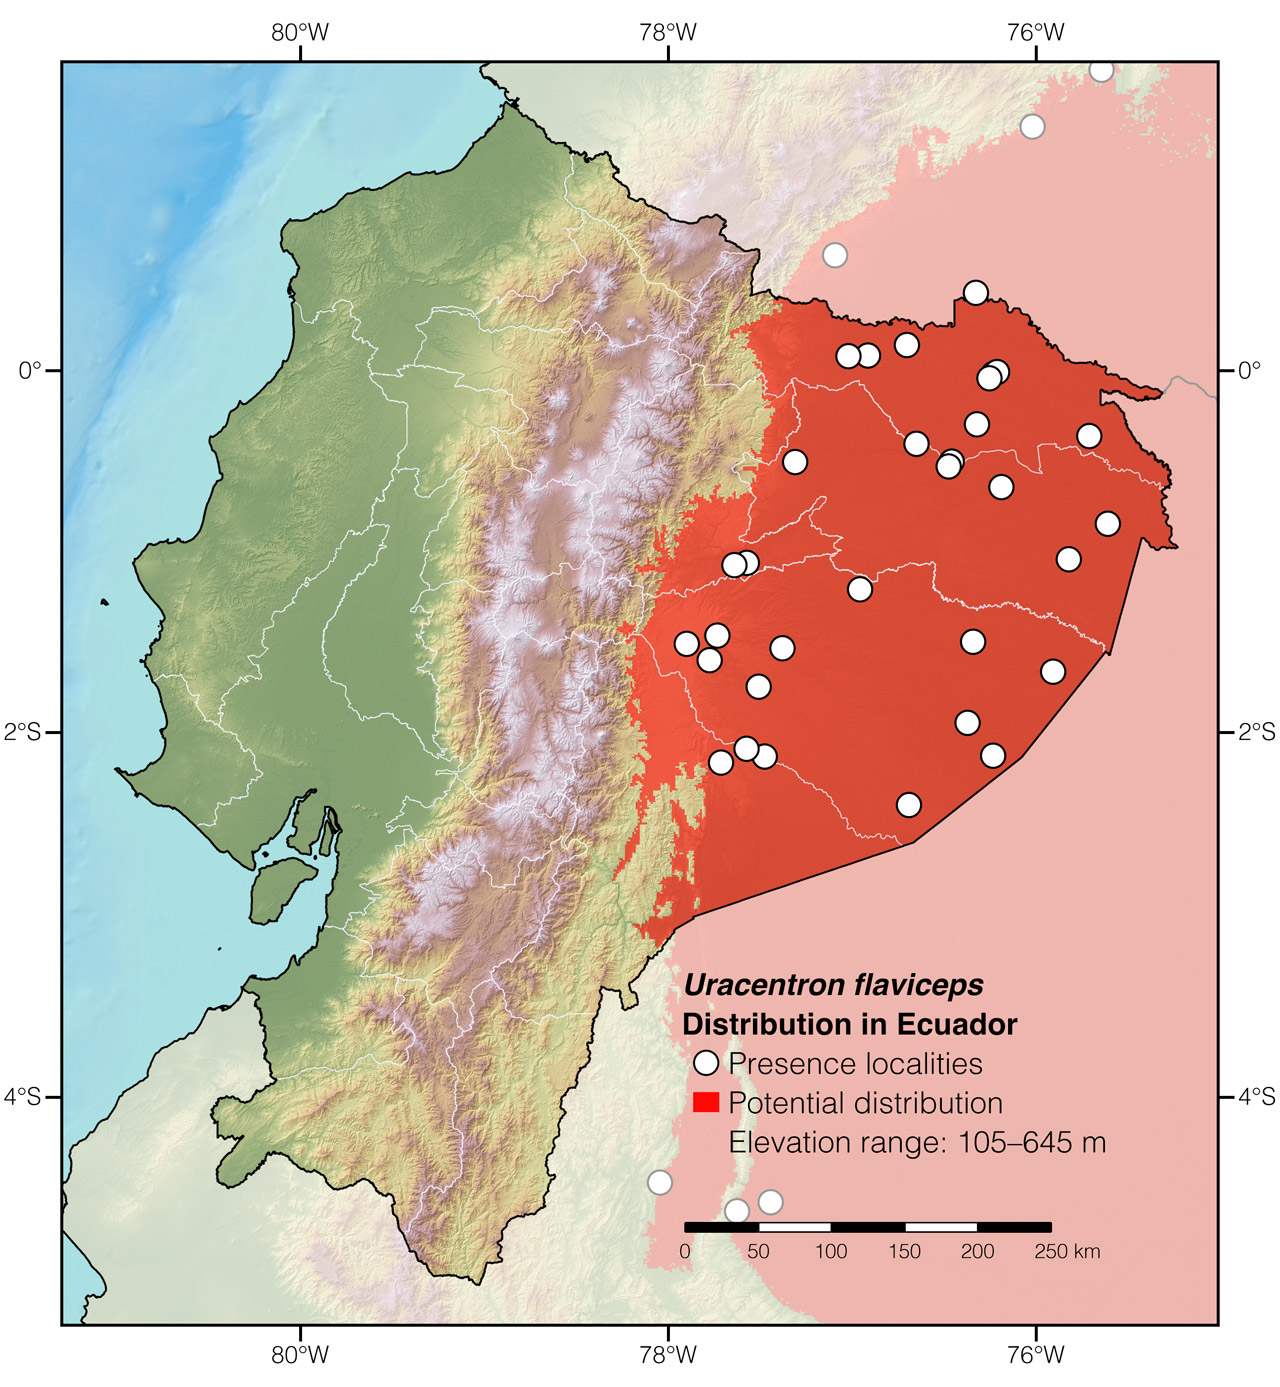 Distribution of Uracentron flaviceps in Ecuador